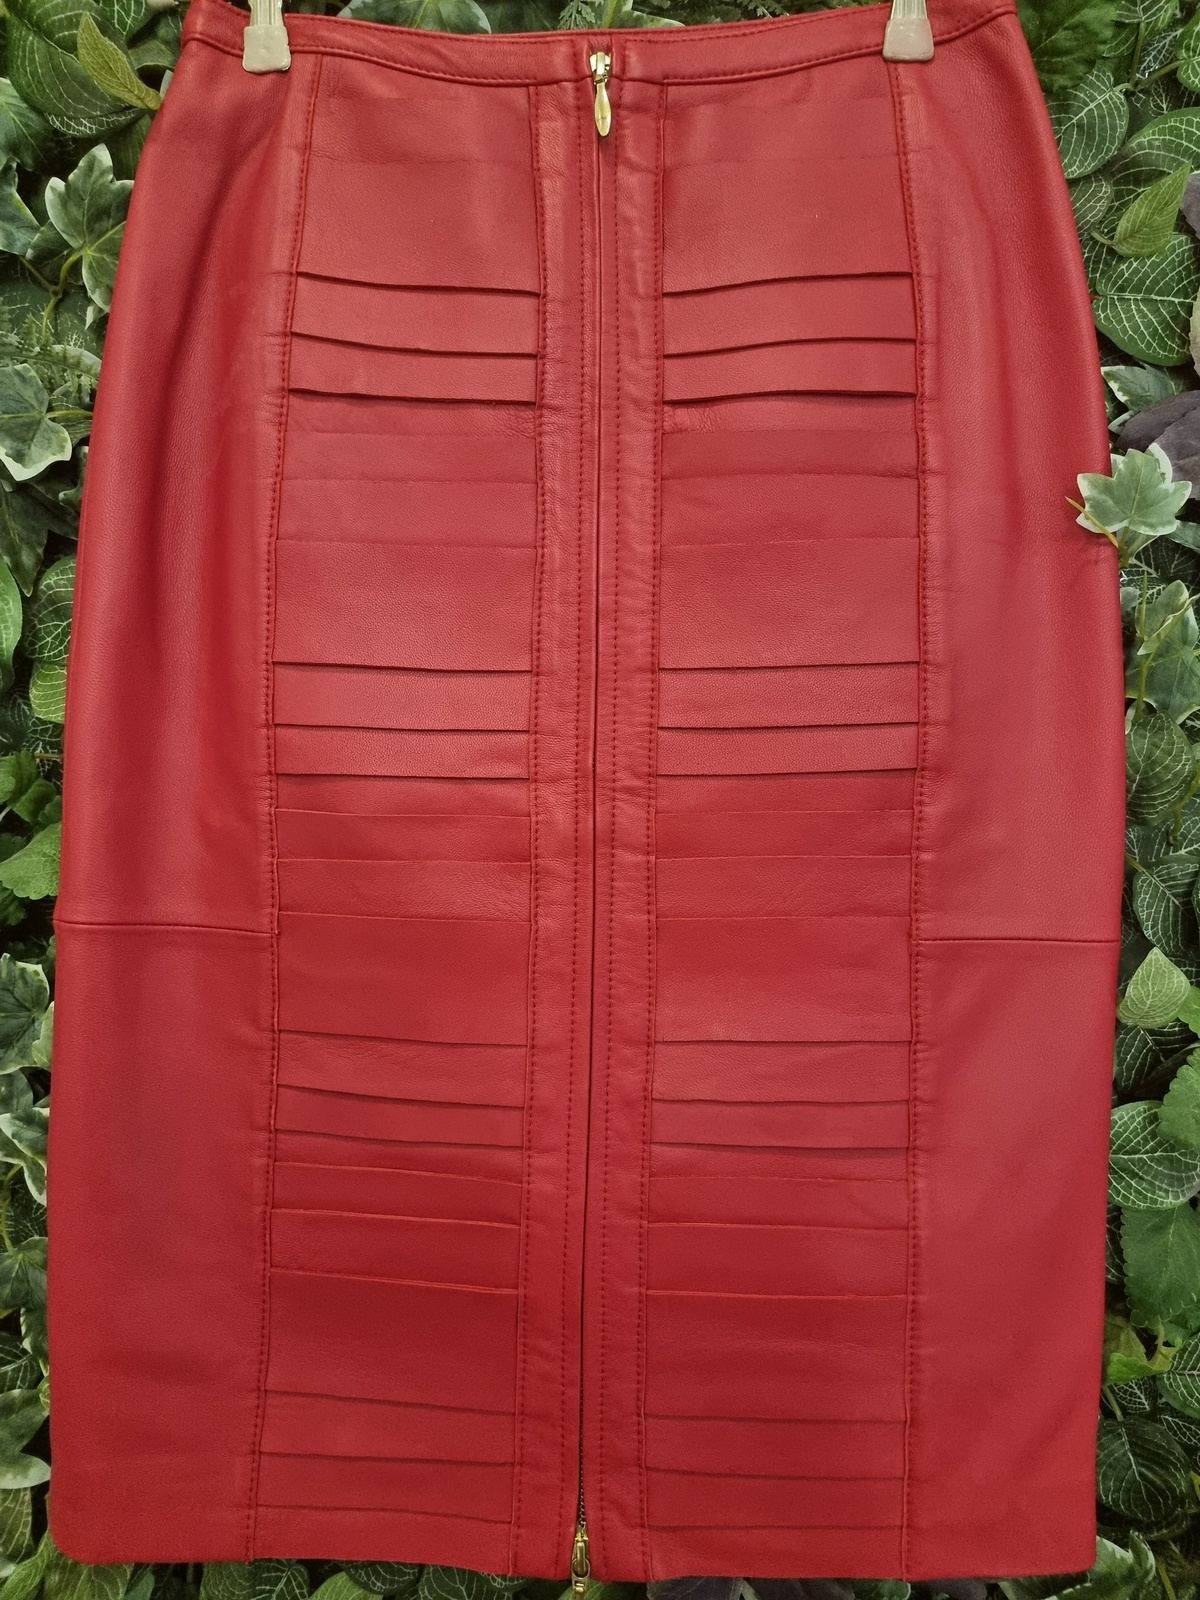 Designer New Rebecca Vallance Leather Skirt